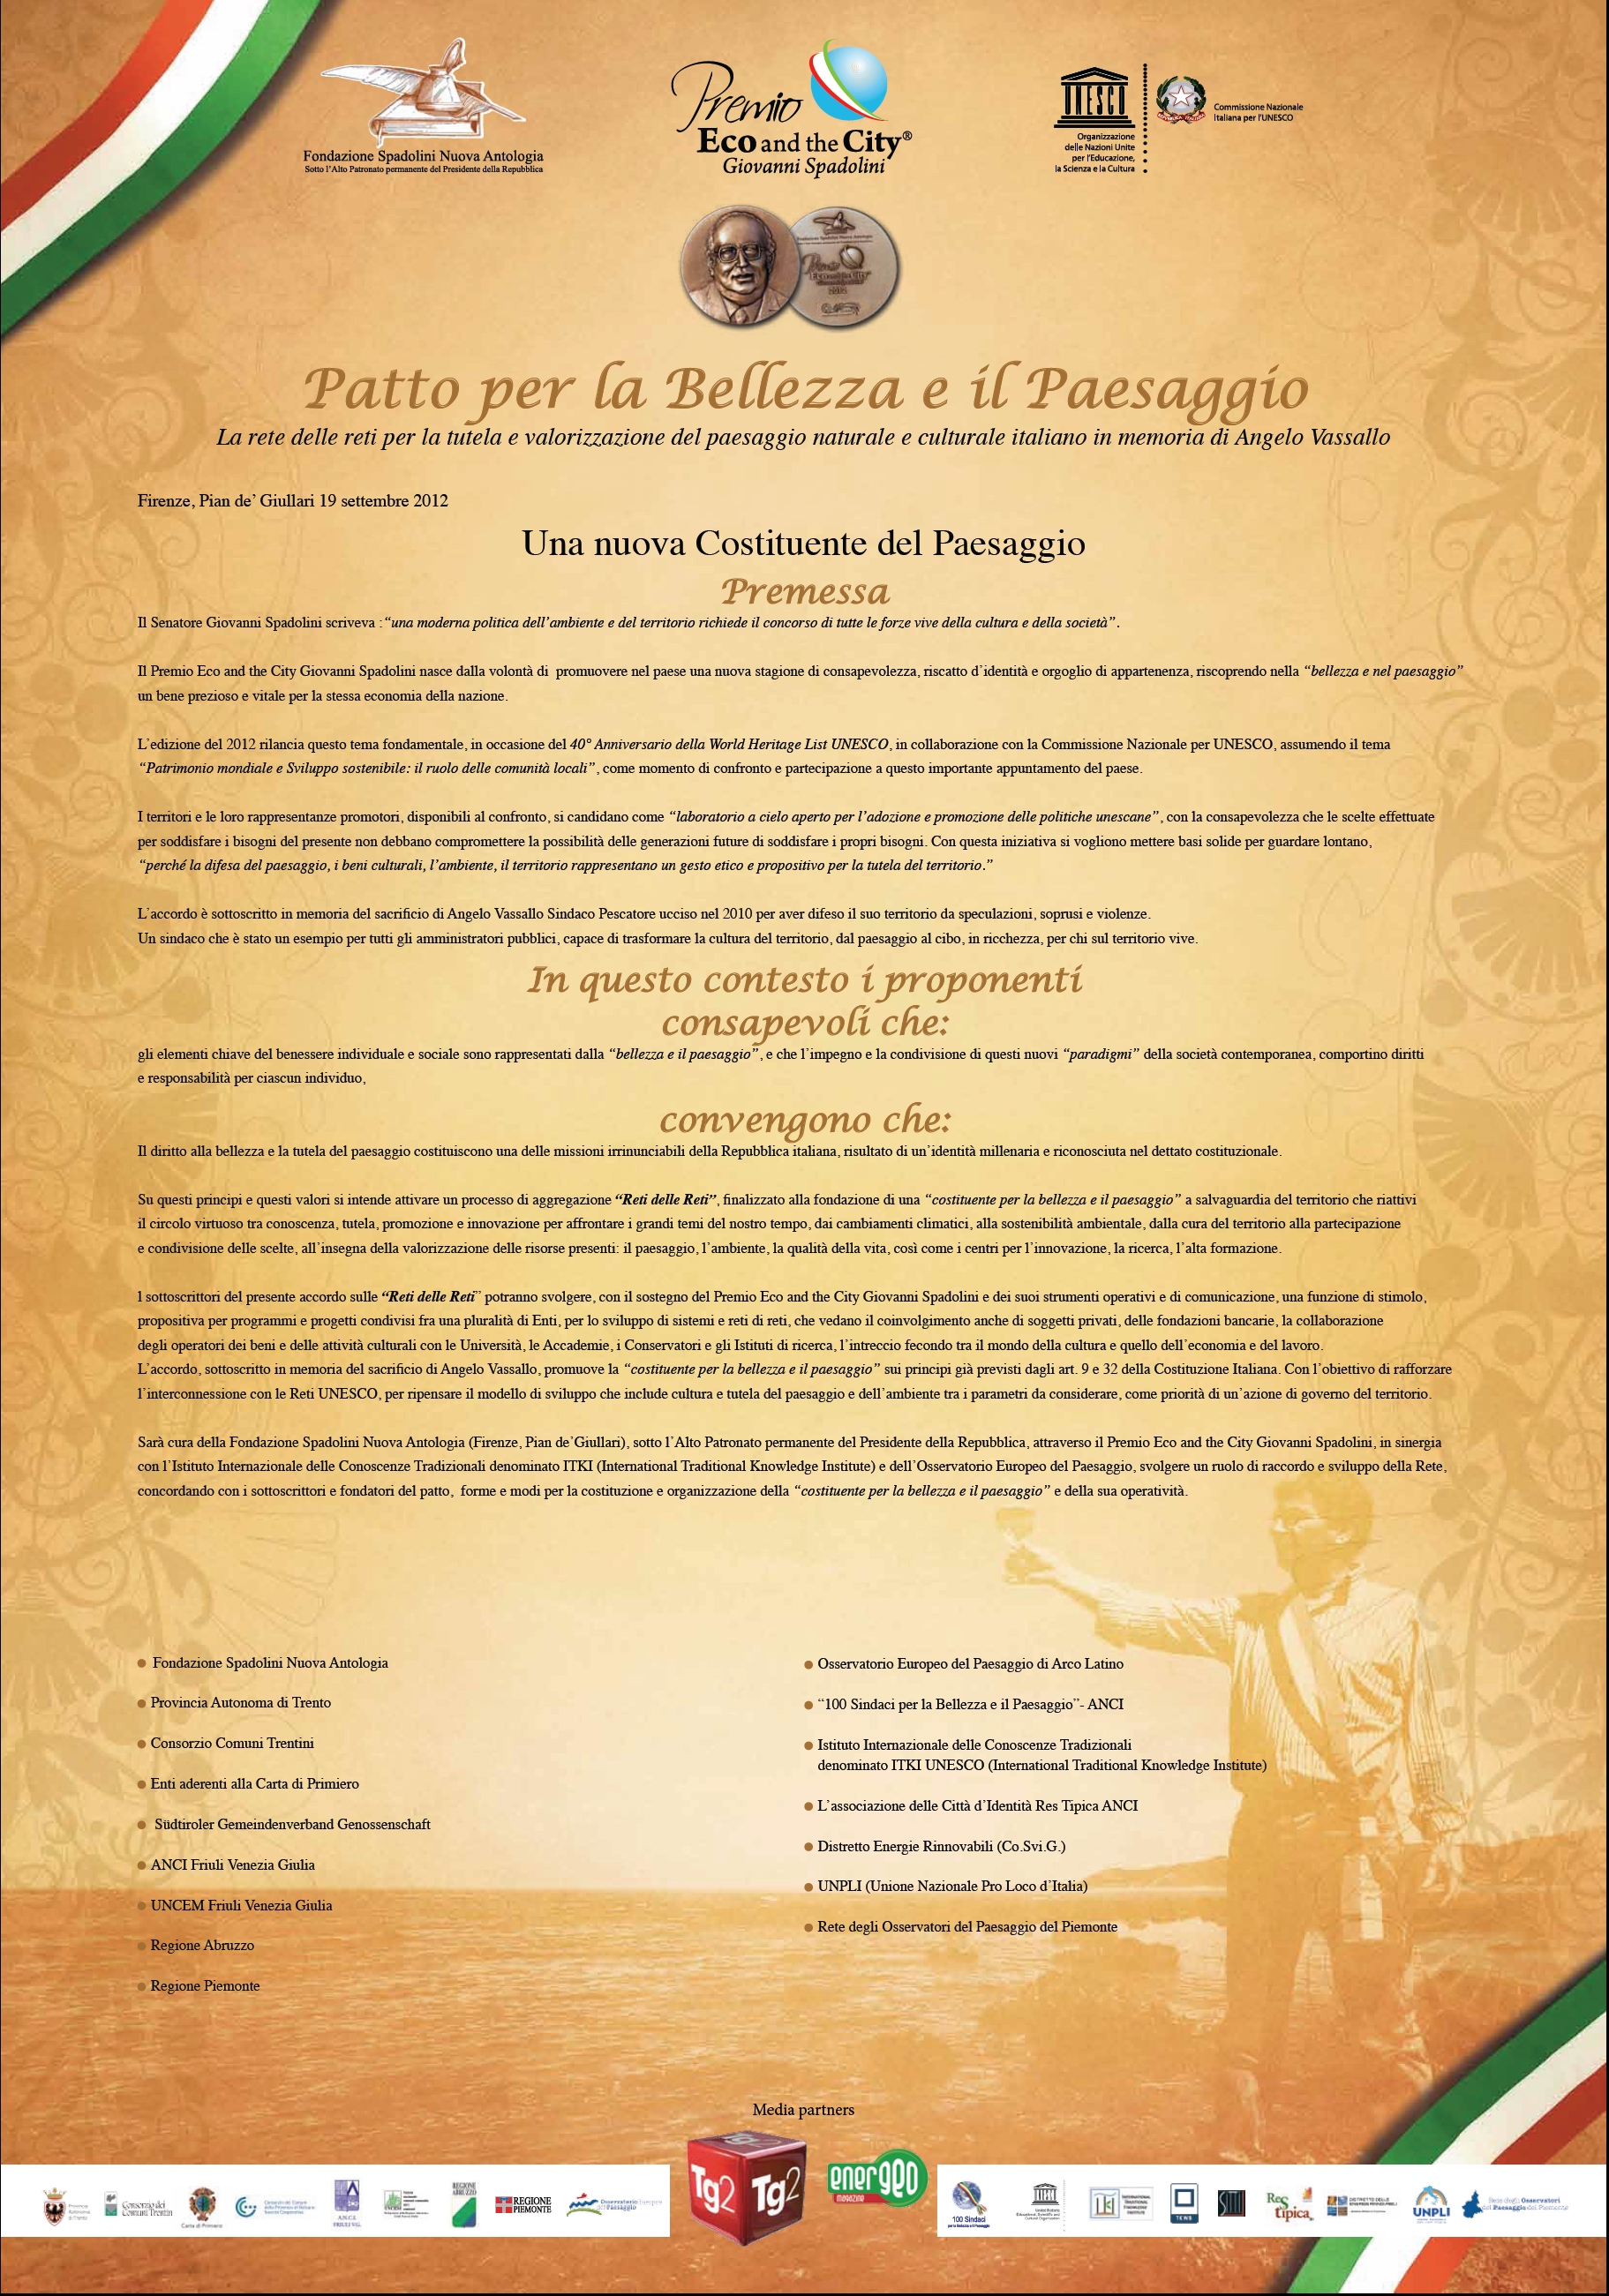 Pergamena del "Patto per la Bellezza e il Paesaggio. RETE delle RETI per la Tutela e Valorizzazione del paesaggio naturale e culturale italiano" (Firenze 19 settembre 2012).